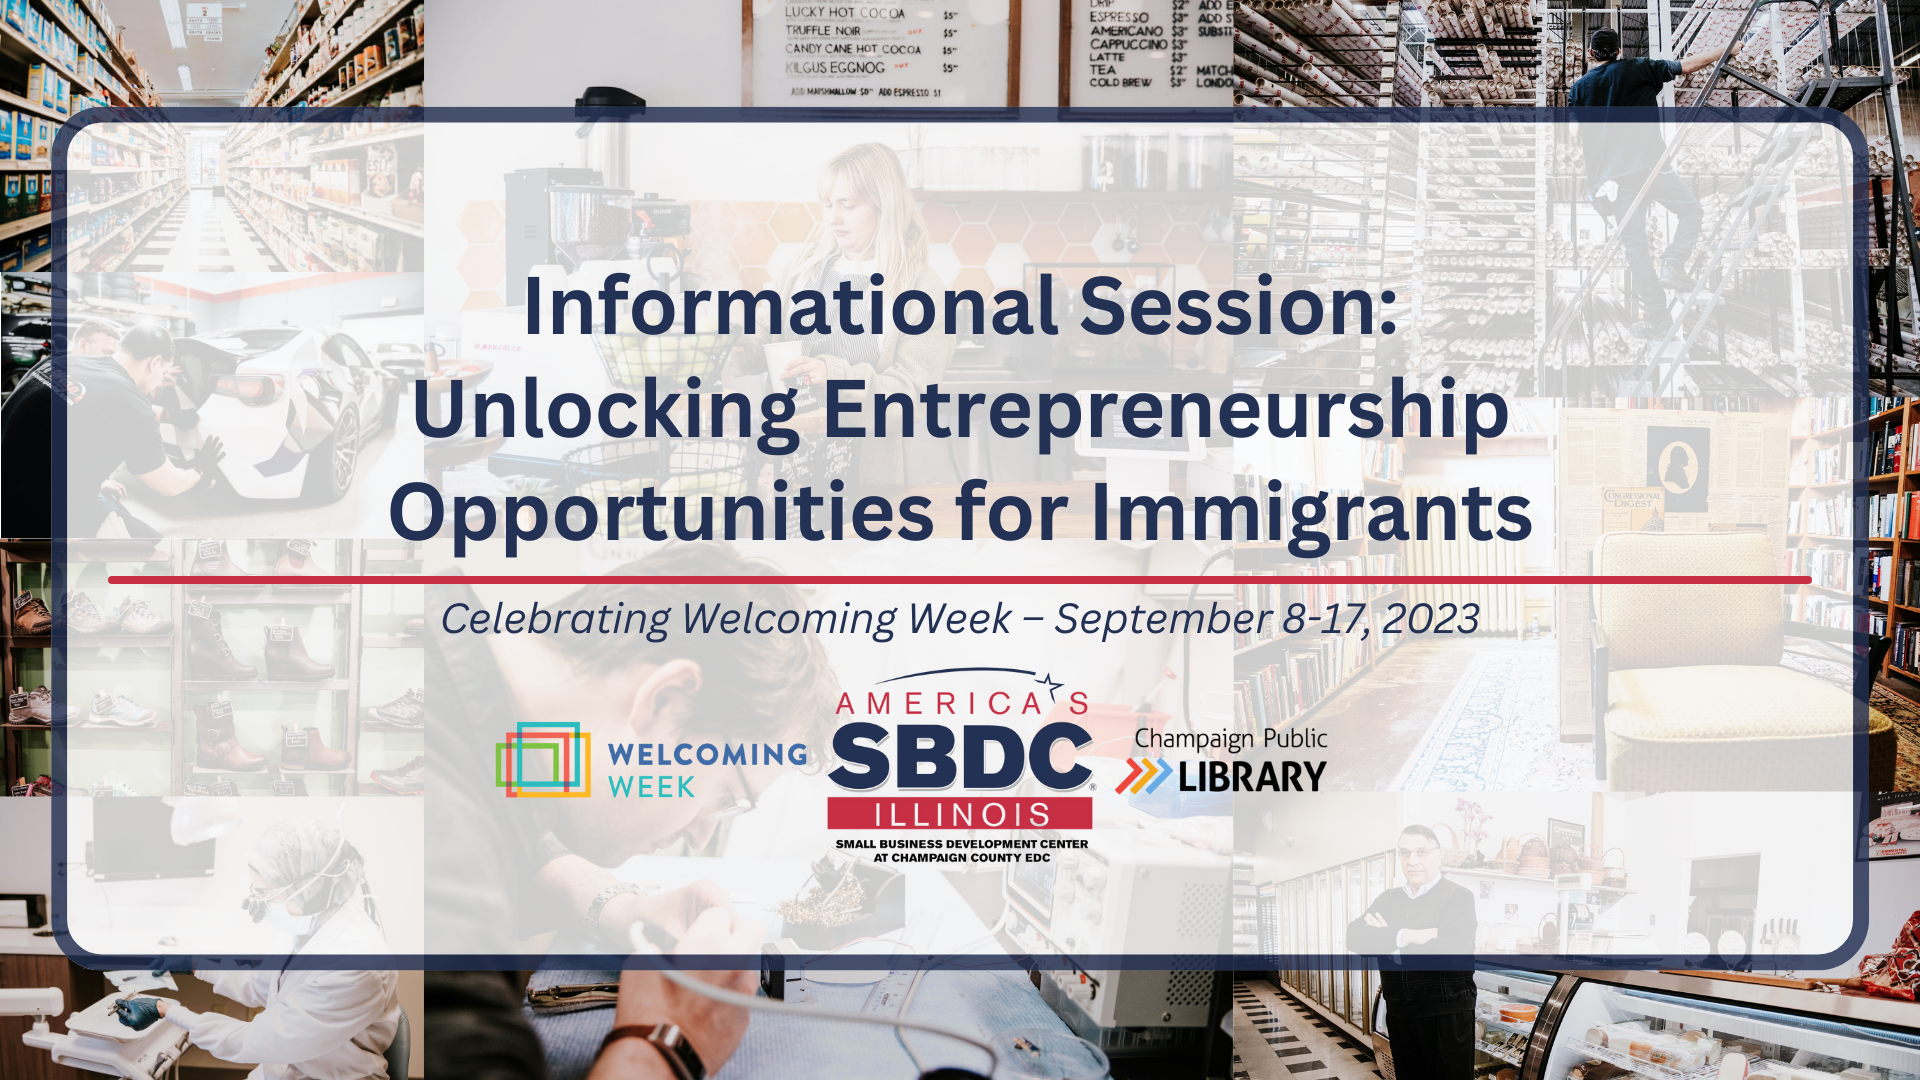 Image for Unlocking Entrepreneurship Opportunities for Immigrants